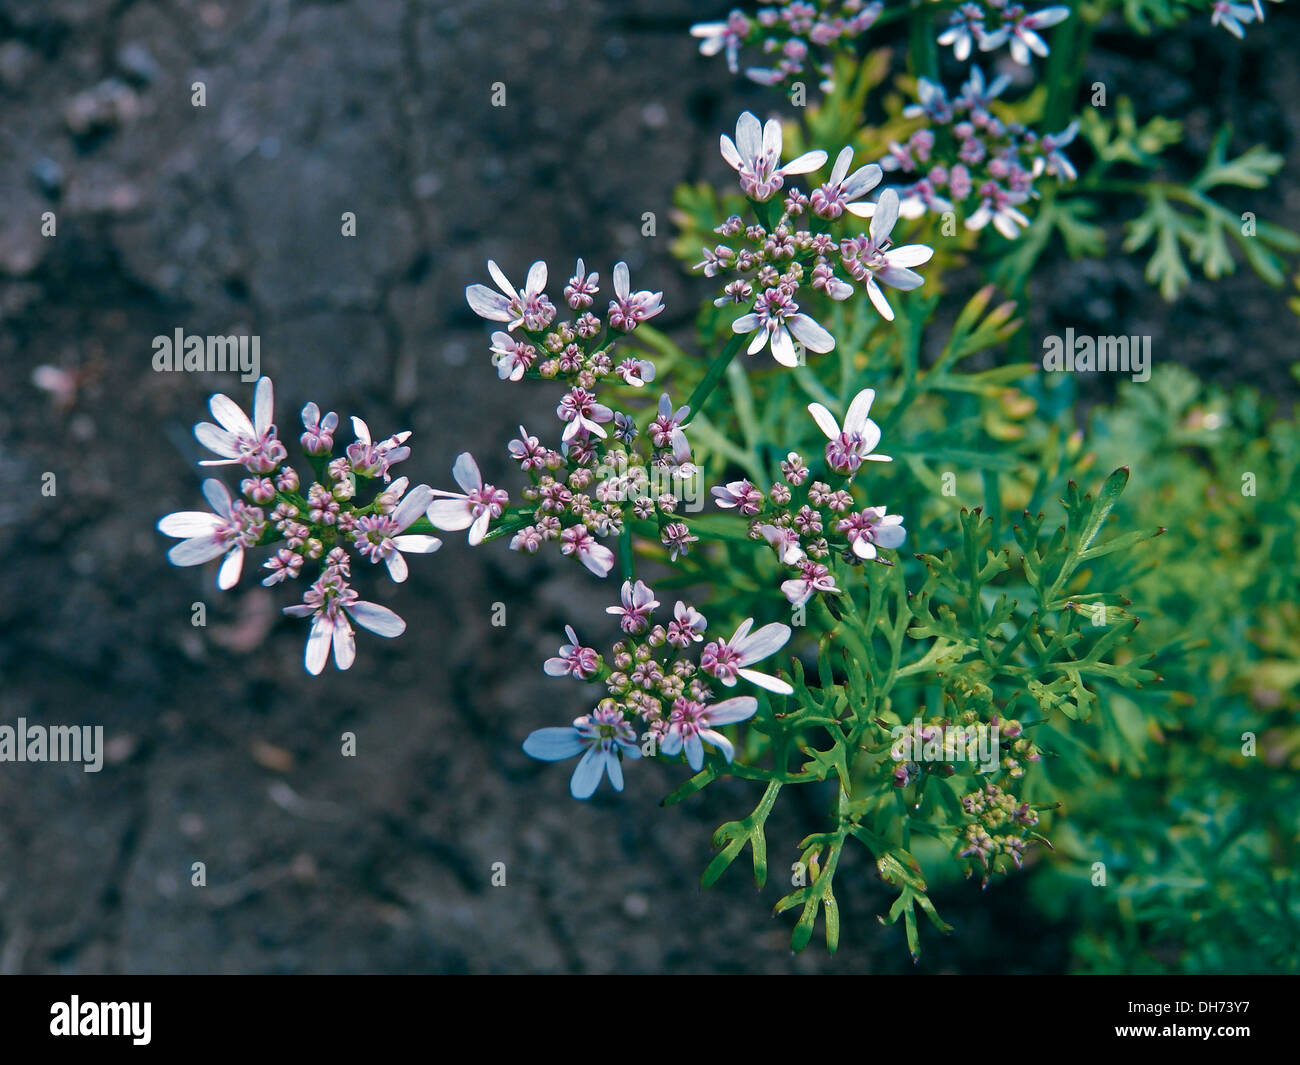 Flowers of Coriander, hara dhania leaves, Coriandrum sativum Stock Photo